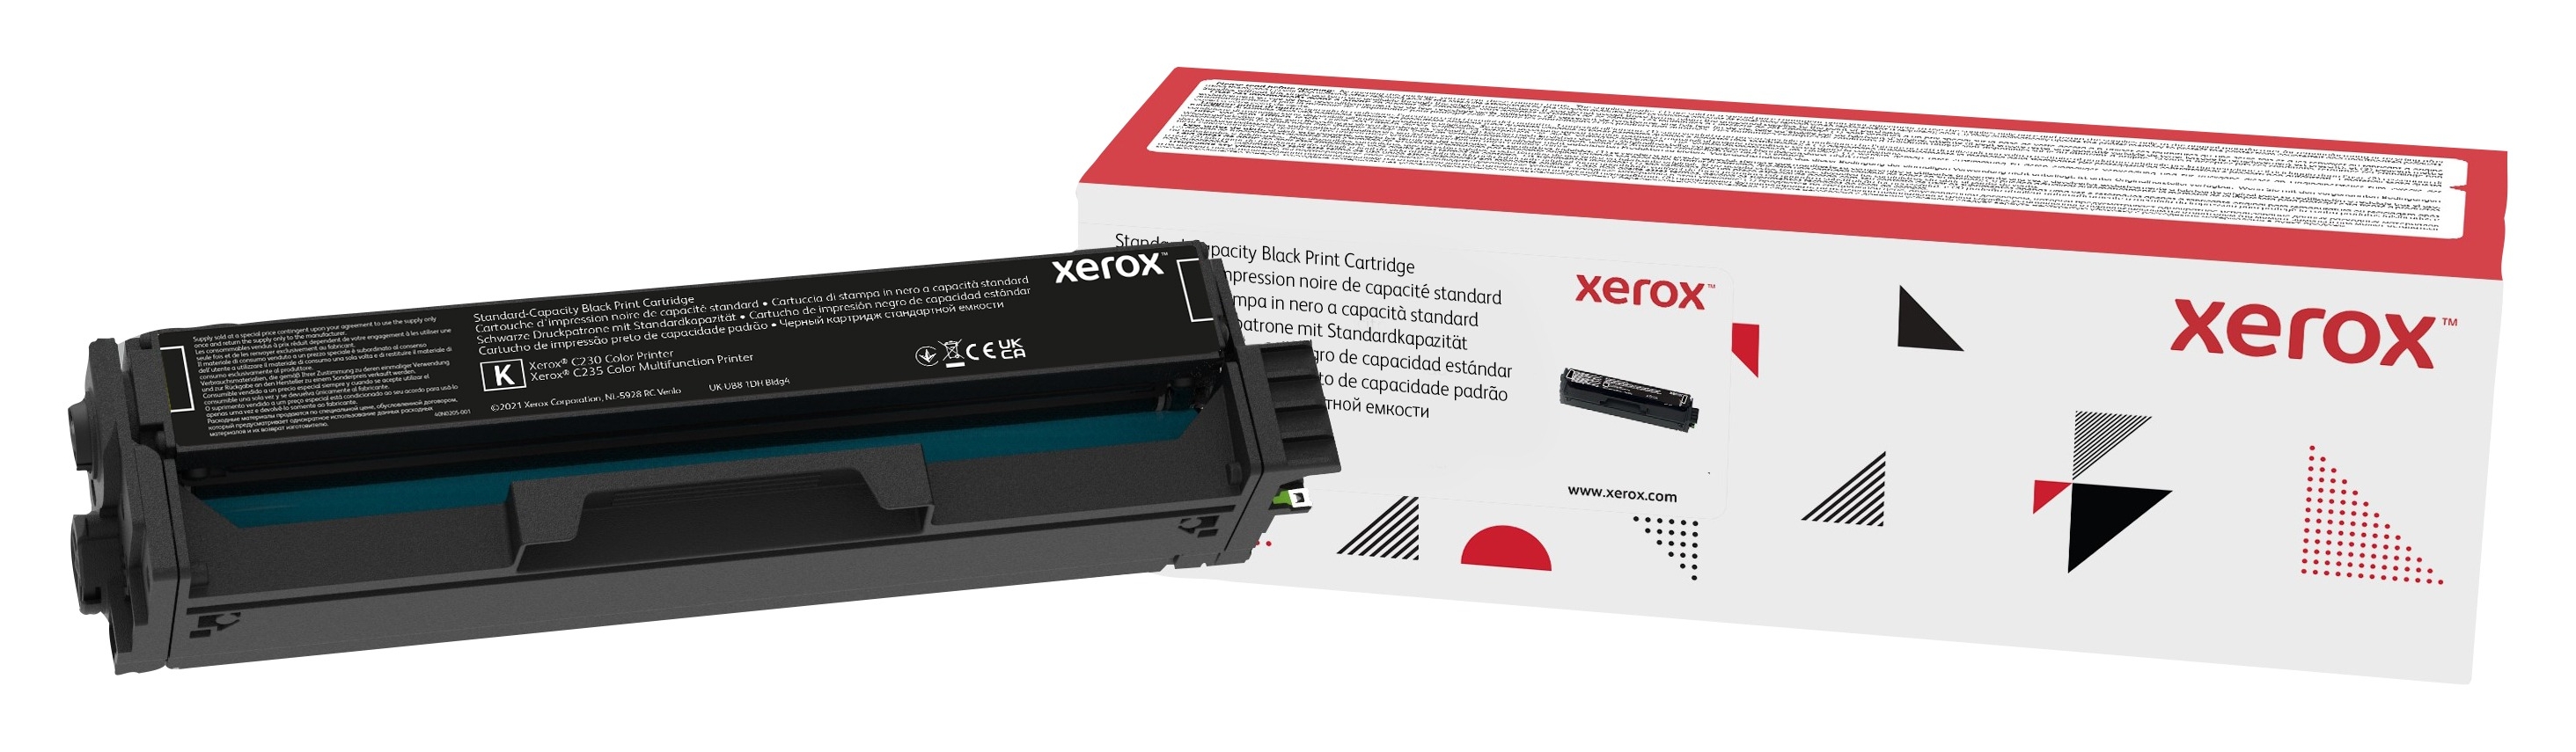 Xerox C230/C235 Cartuccia toner capacità standard nero (1.500 pagine)  006R04383 Genuine Xerox Supplies